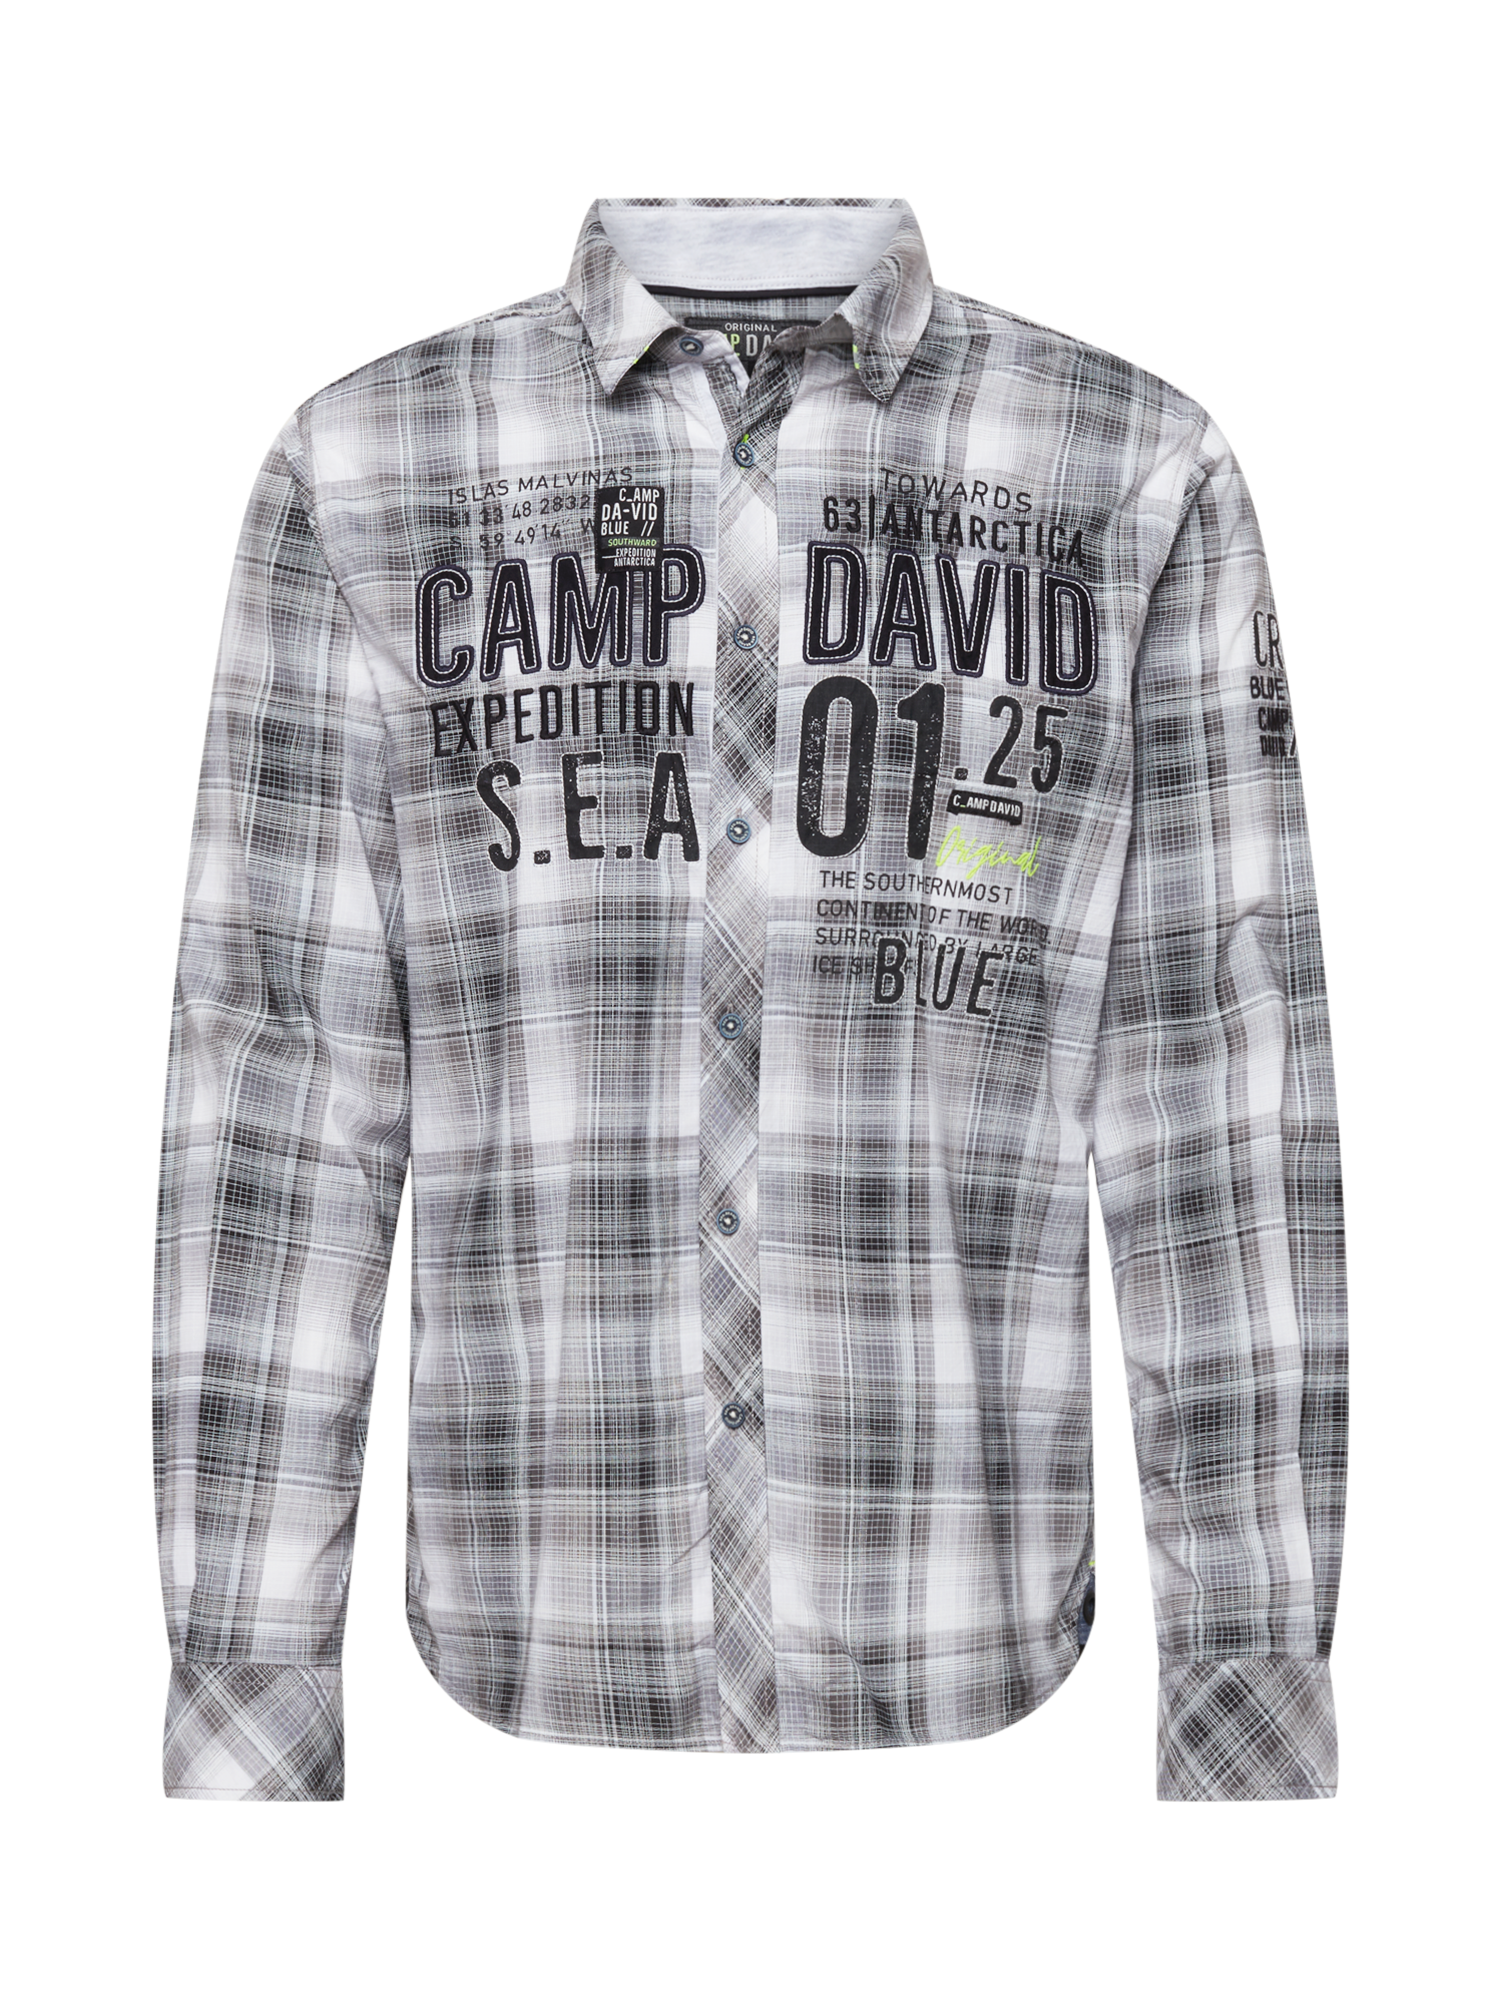 CAMP DAVID Koszula w kolorze Szary, Białym 